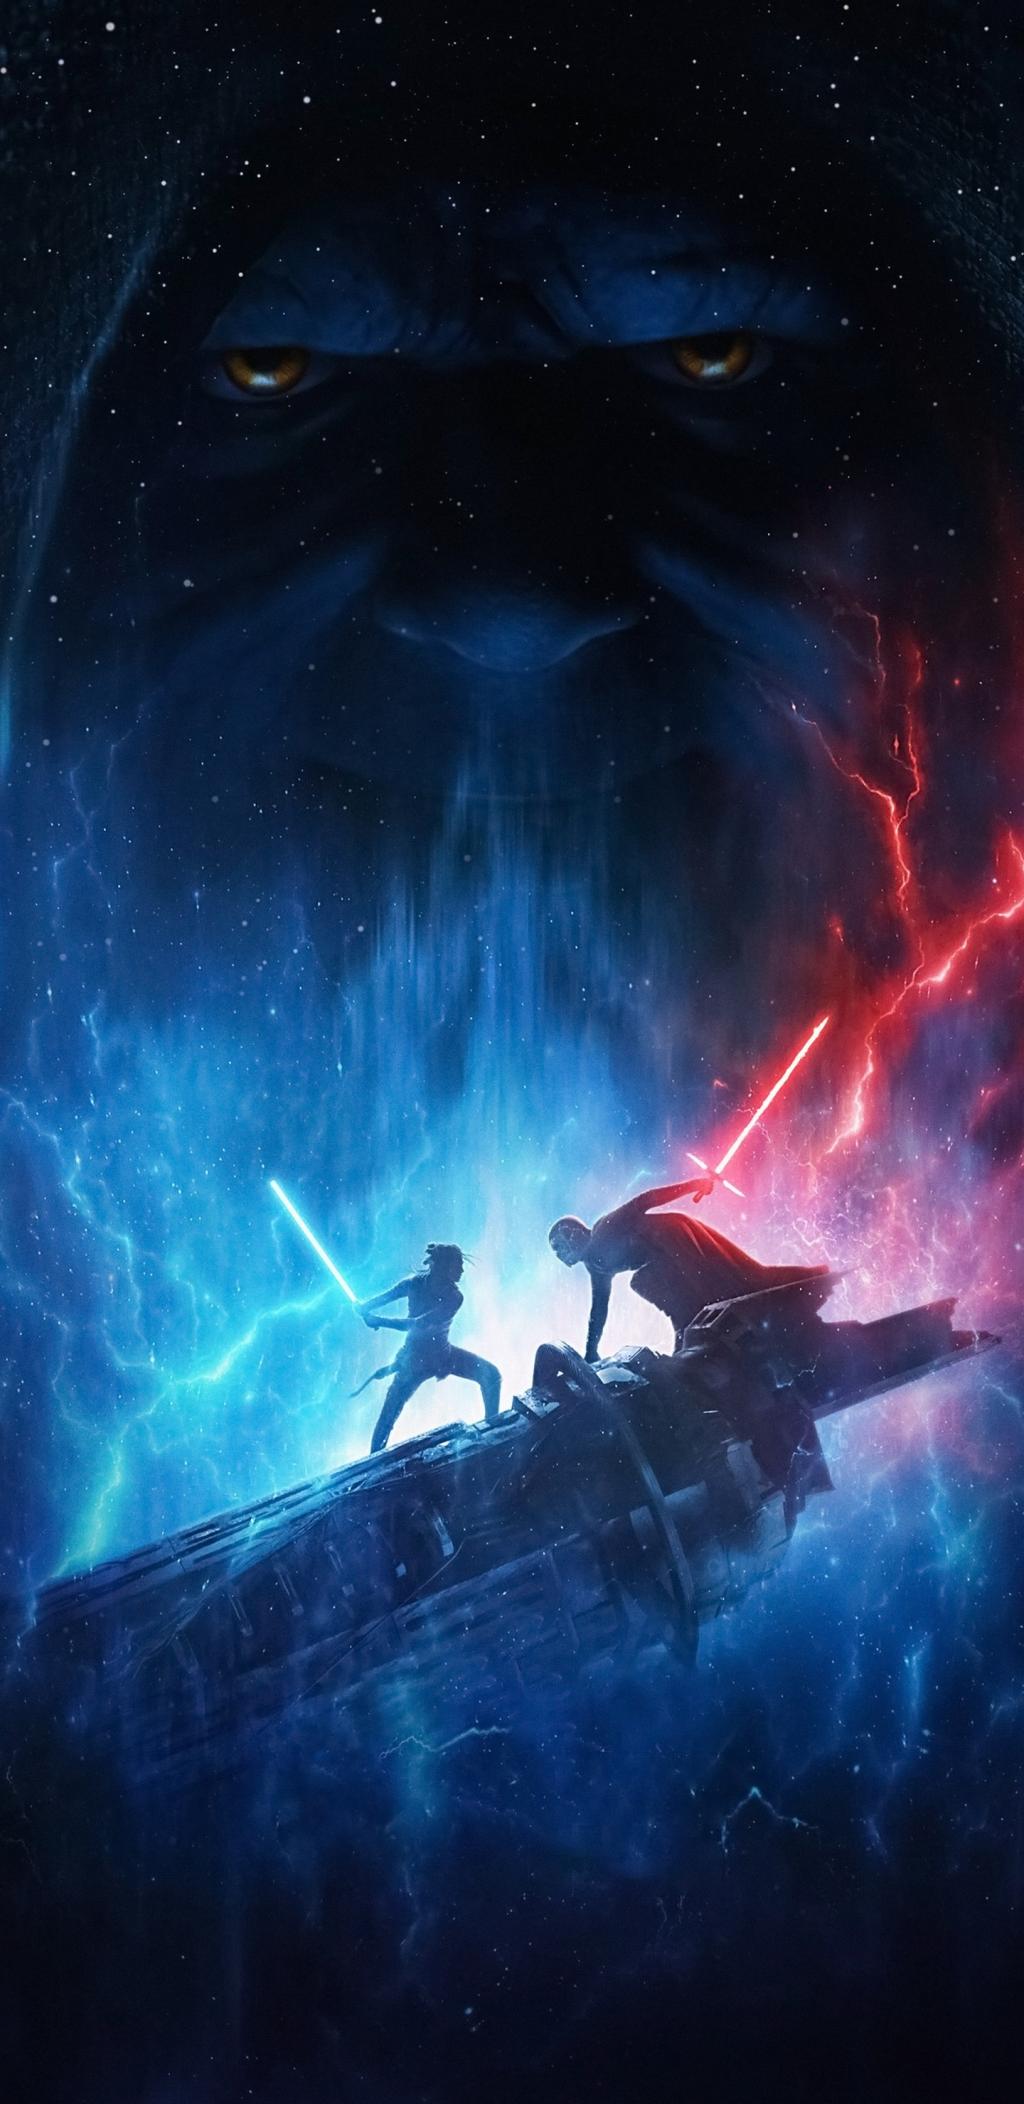 科幻动作巨著《星球大战9:天行者崛起(2019)》封面壁纸